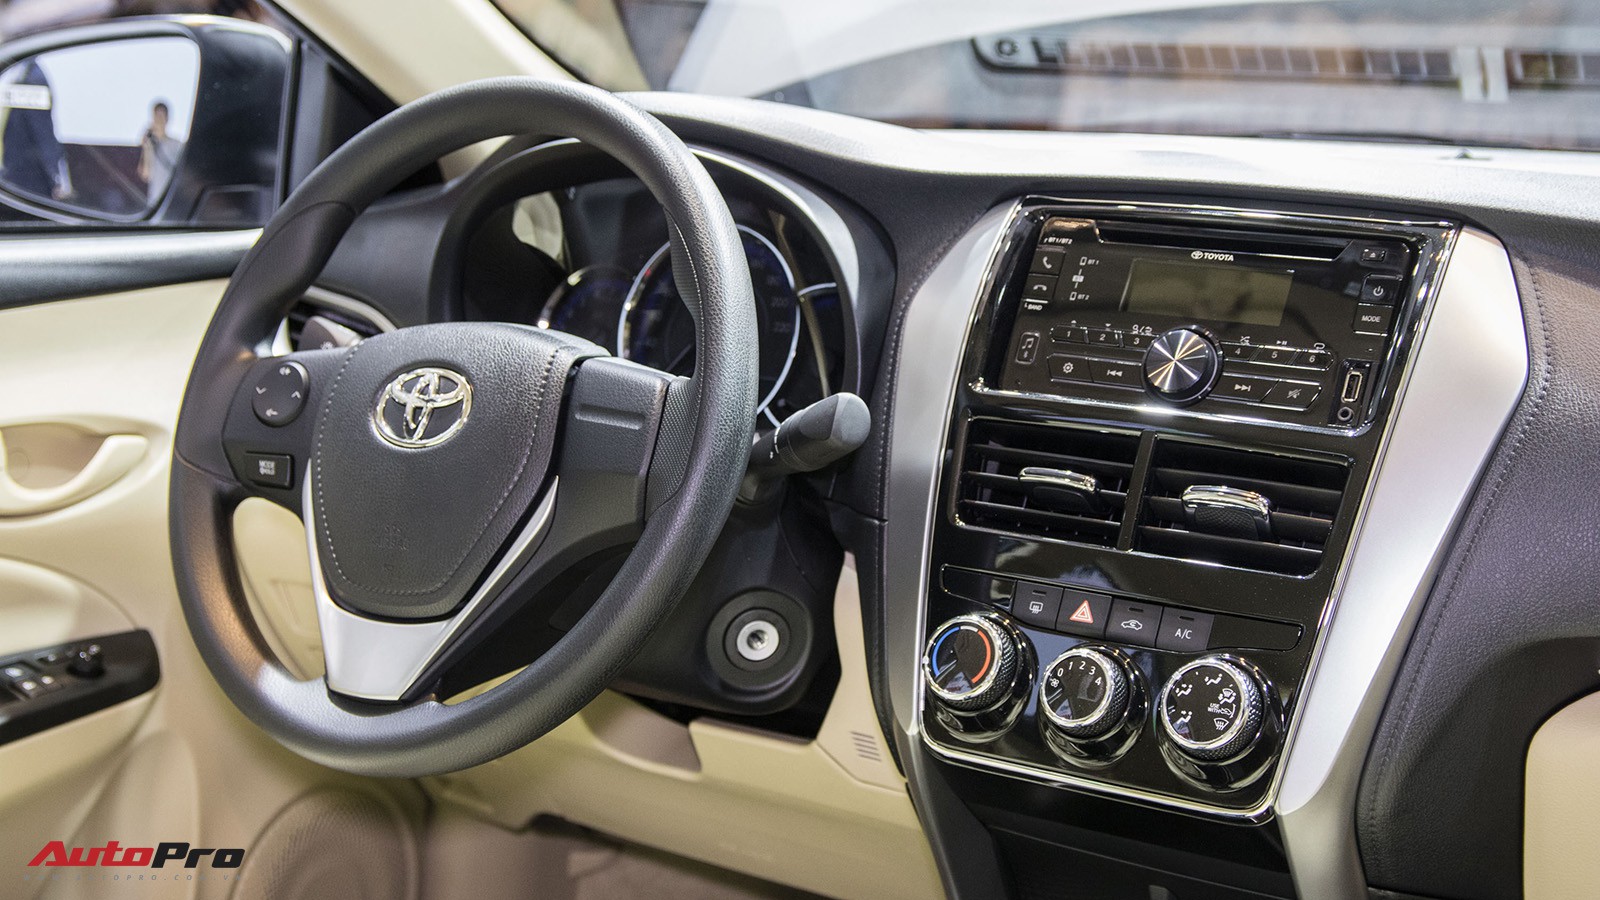 Toyota Vios 15G TRD Sportivo Cũ thông số giá bán khuyến mãi